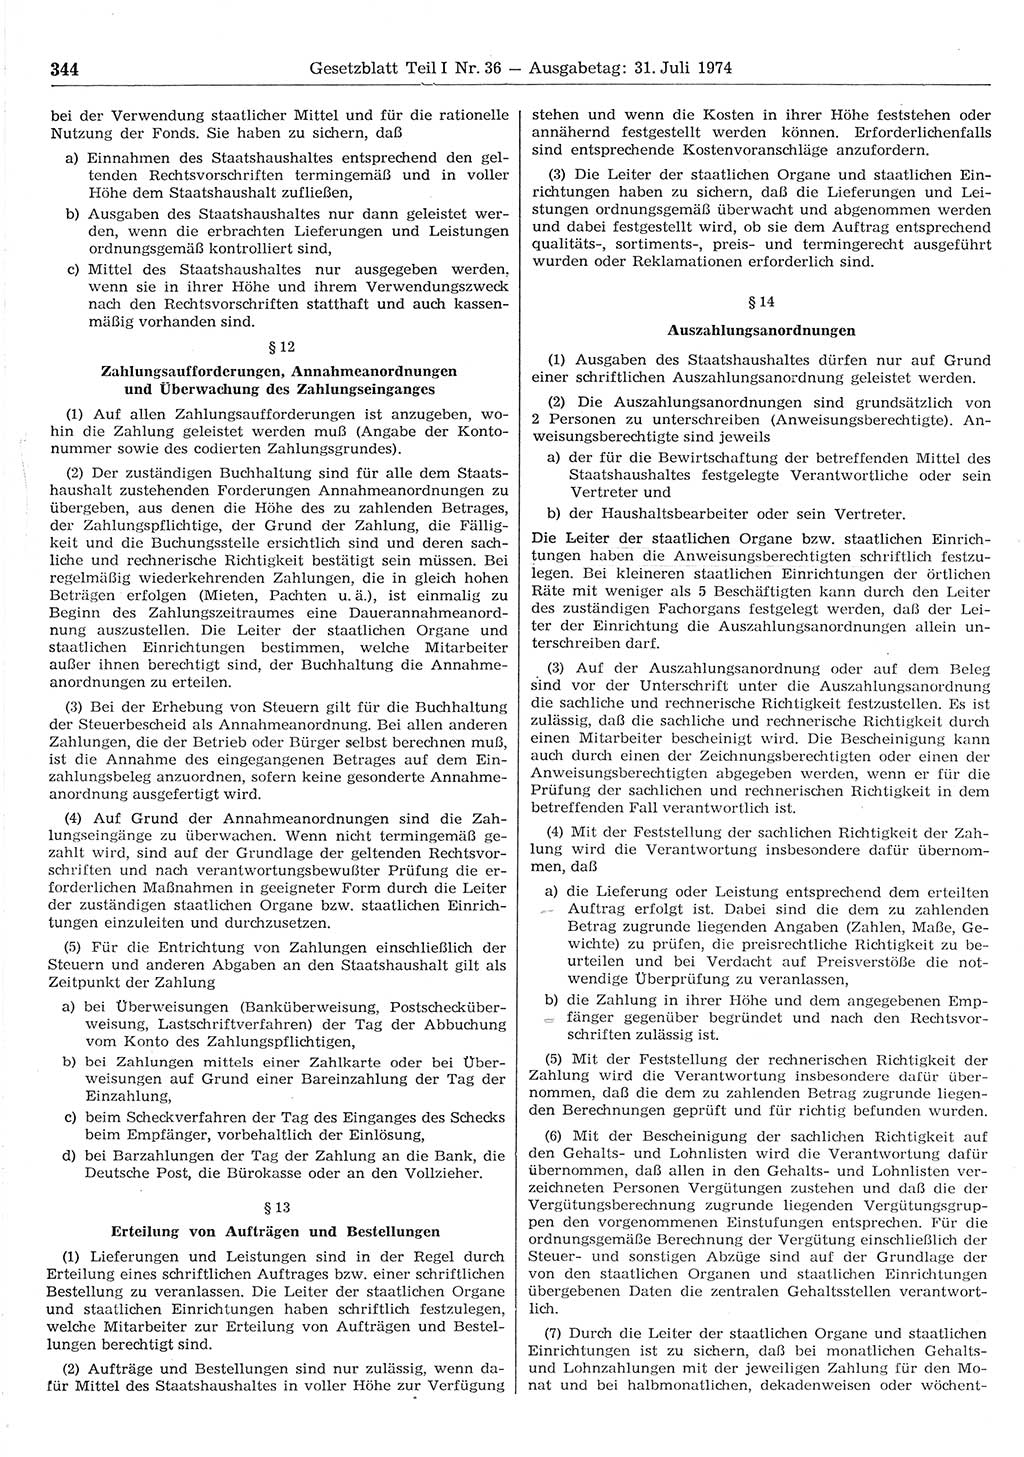 Gesetzblatt (GBl.) der Deutschen Demokratischen Republik (DDR) Teil Ⅰ 1974, Seite 344 (GBl. DDR Ⅰ 1974, S. 344)